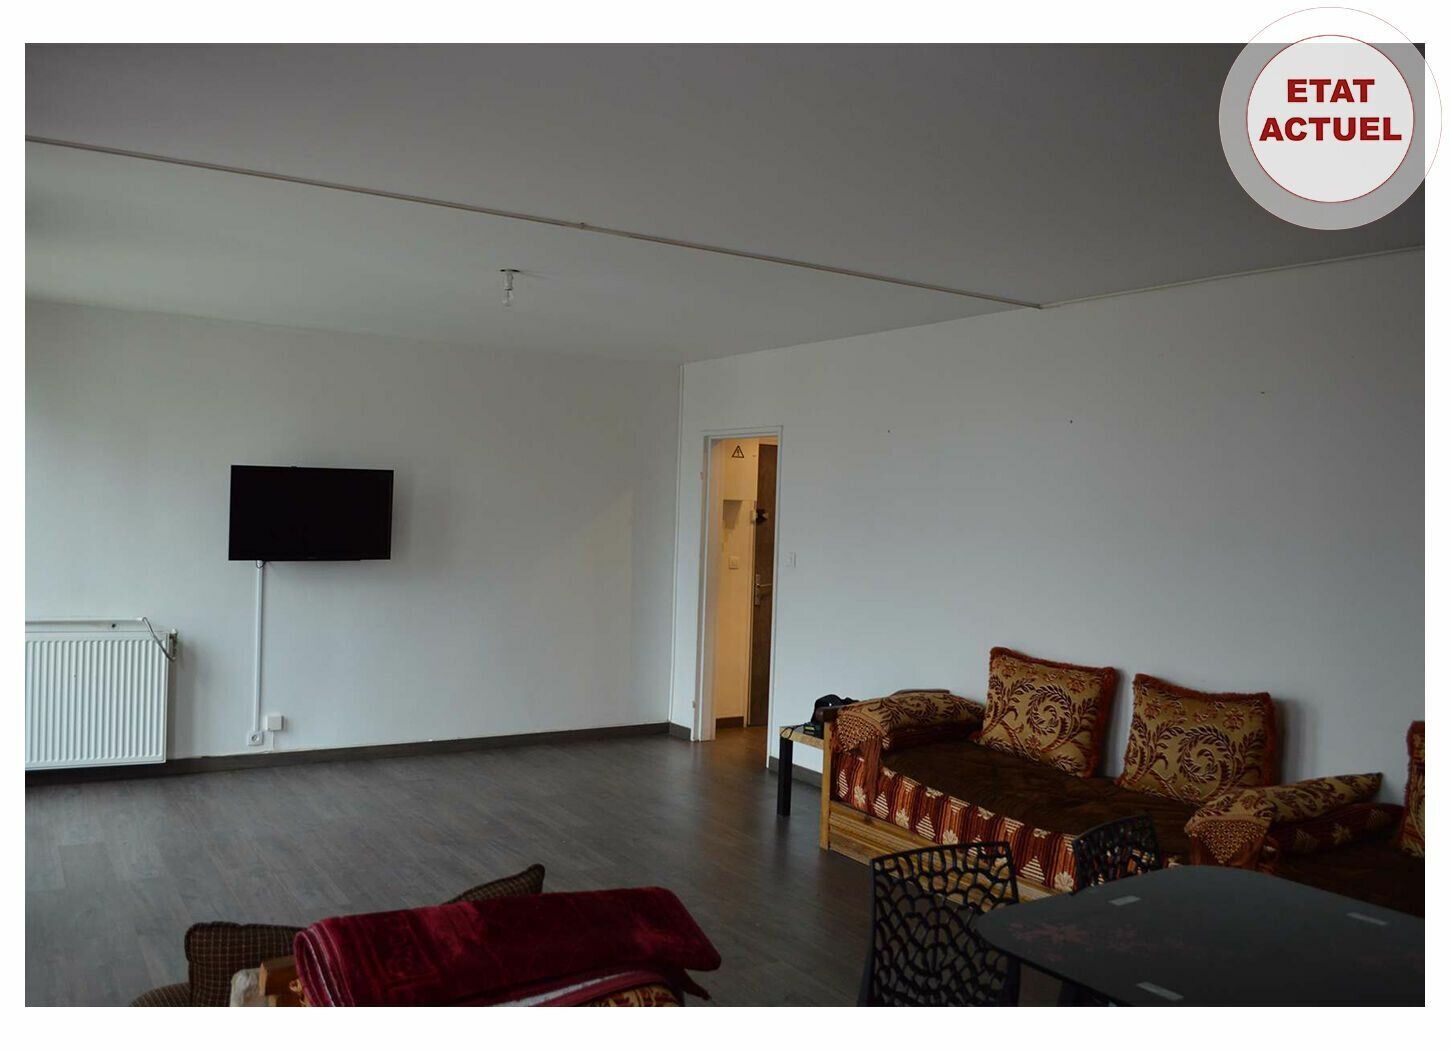 Appartement à vendre 4 89m2 à Joué-lès-Tours vignette-7